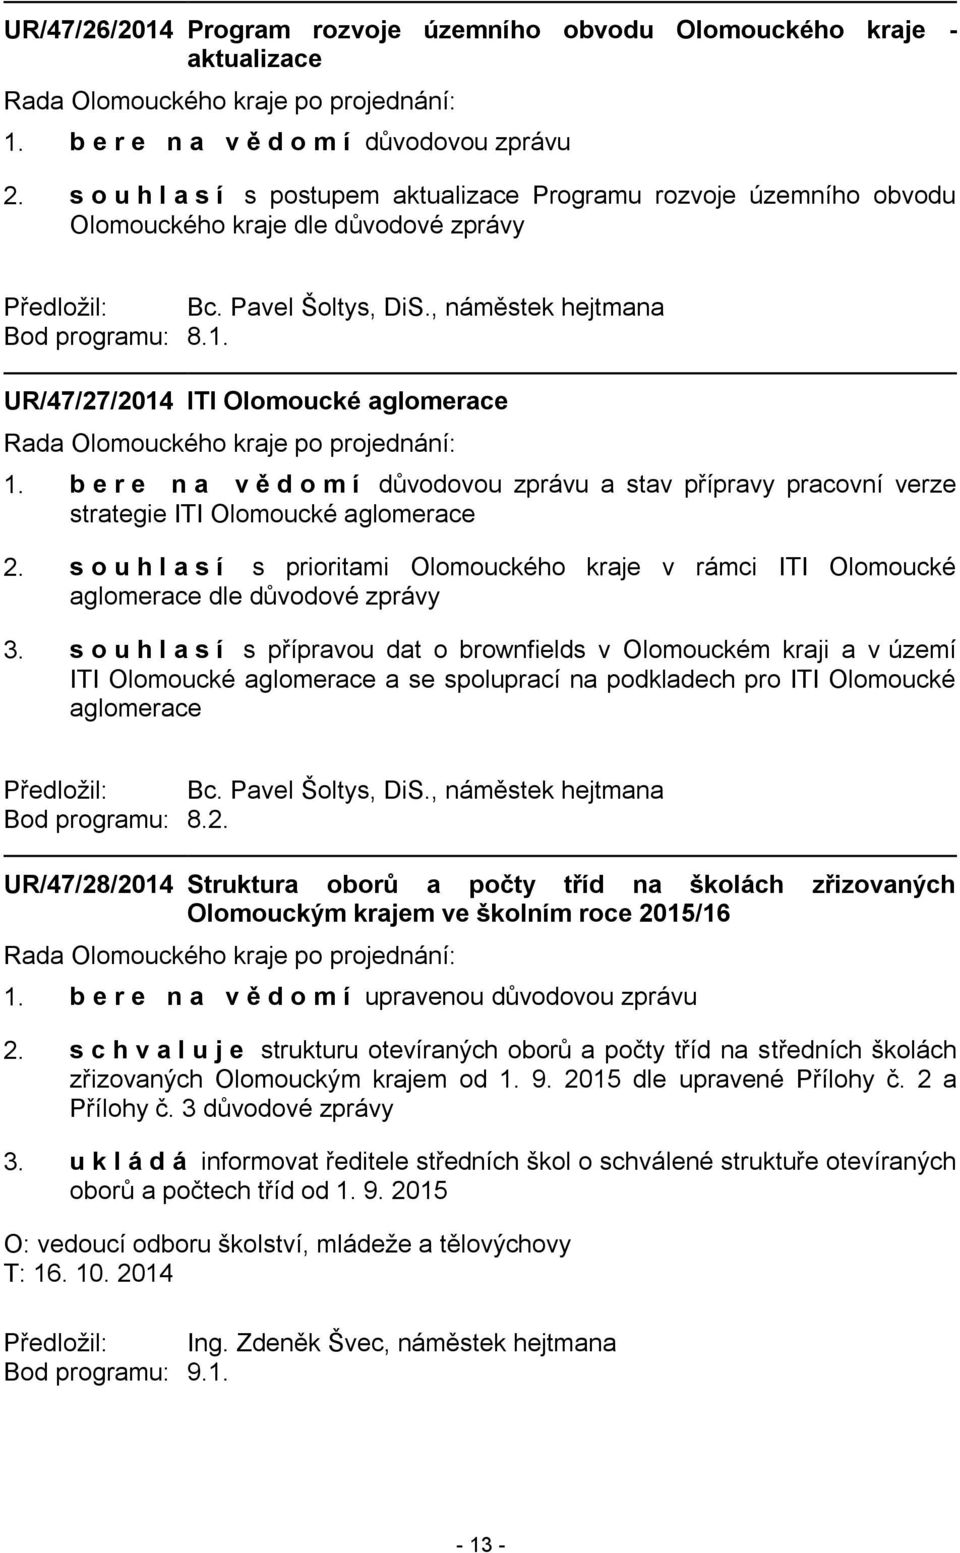 UR/47/27/2014 ITI Olomoucké aglomerace a stav přípravy pracovní verze strategie ITI Olomoucké aglomerace 2.